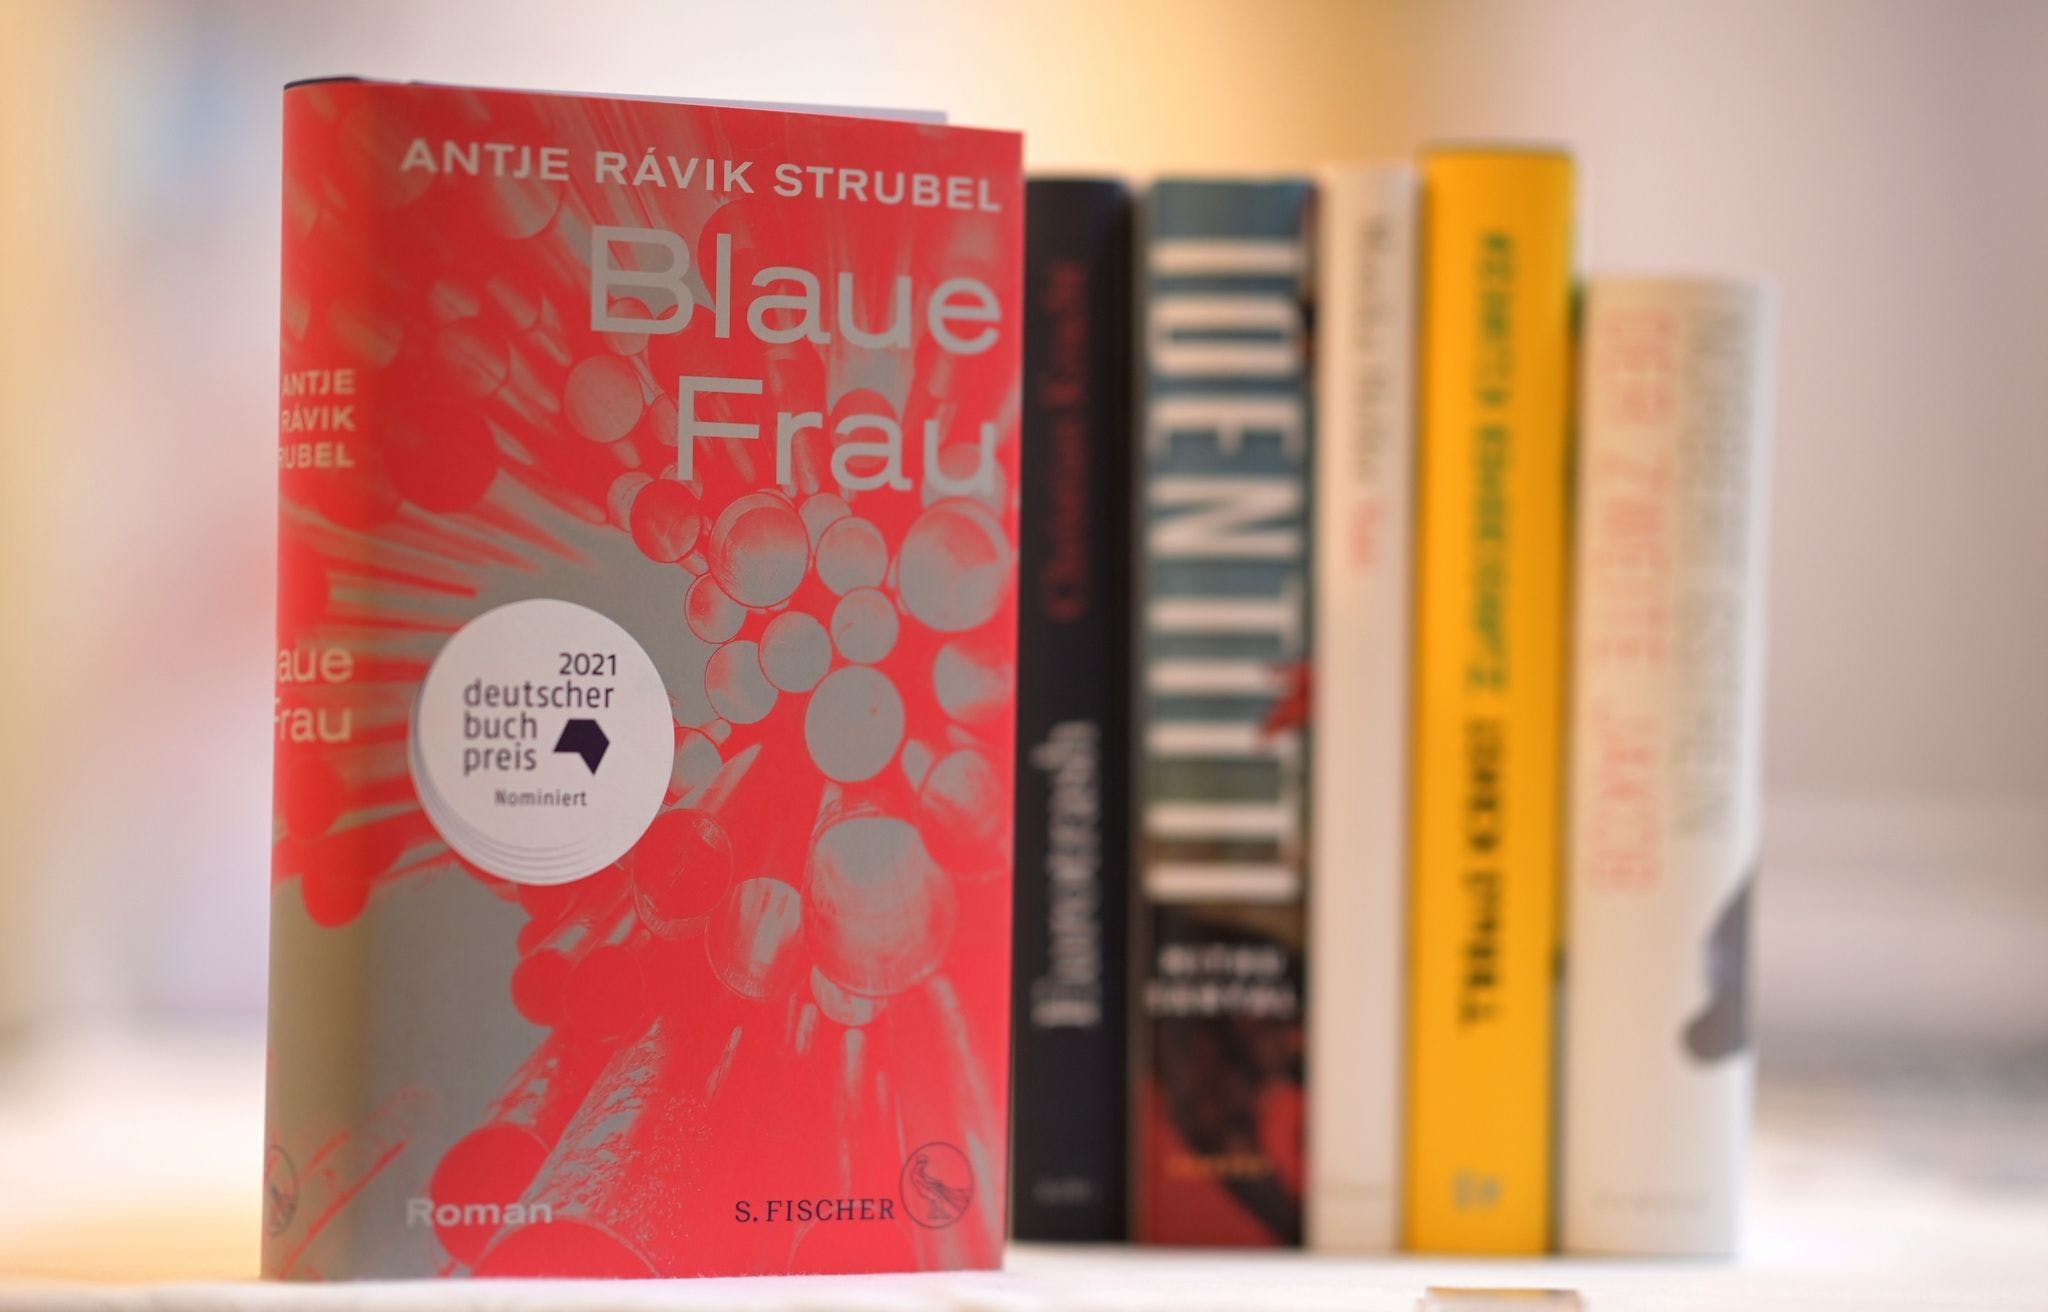 رواية امرأة زرقاء لأنتيا شتروبل الفائزة بجائزة الكتاب الألماني لعام 2021.jpeg